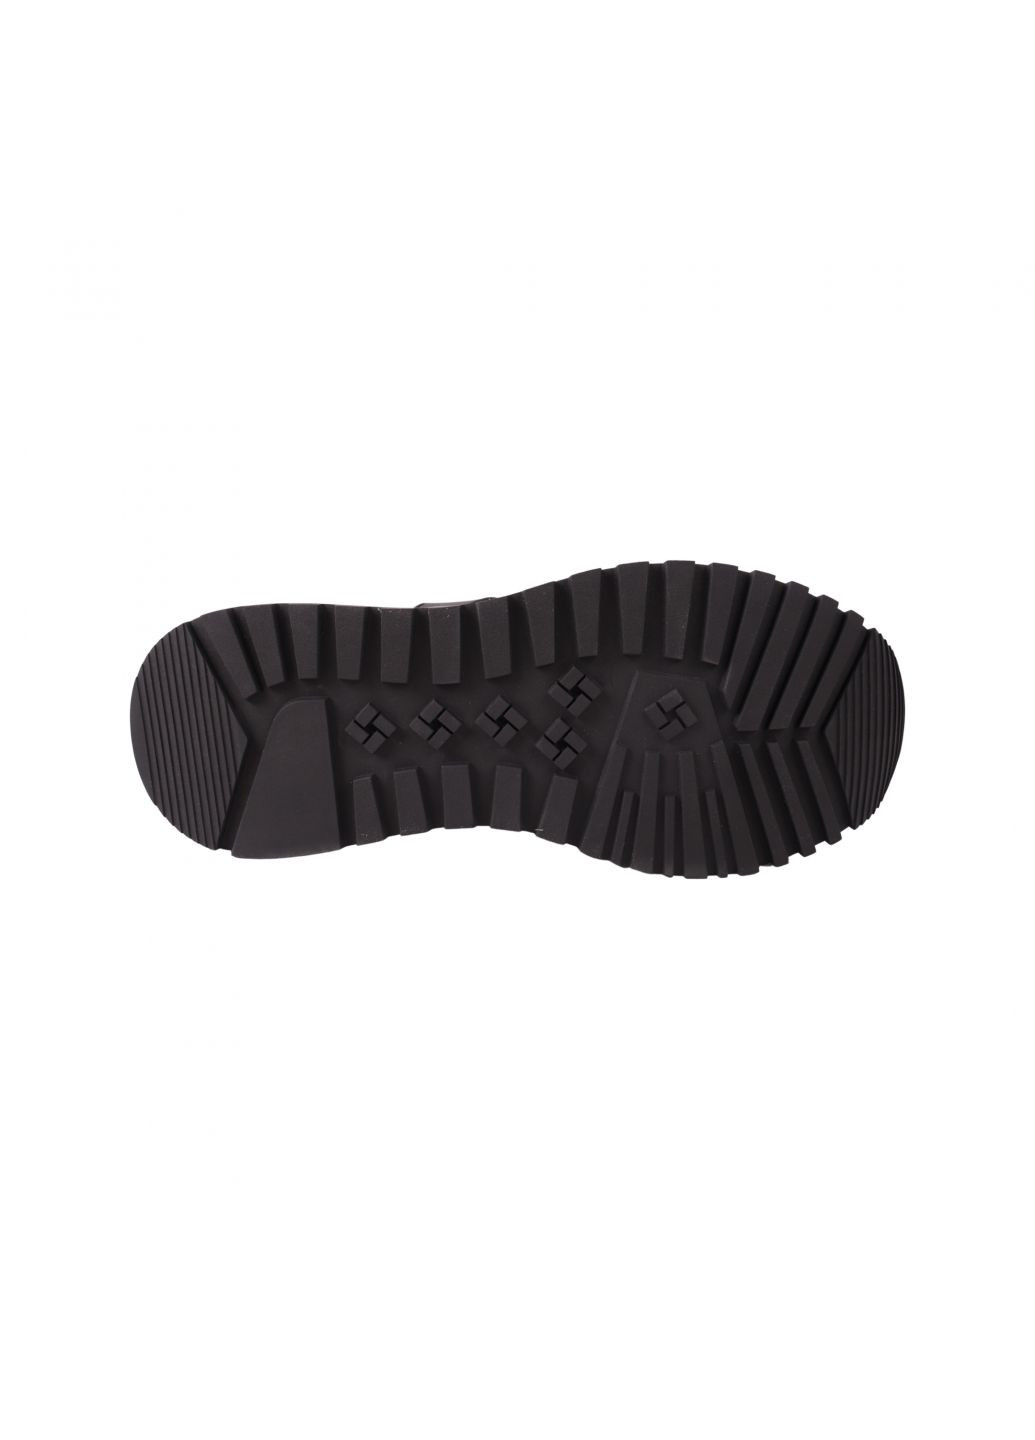 Черные кроссовки мужские черные натуральная кожа Brooman 972-23DTS